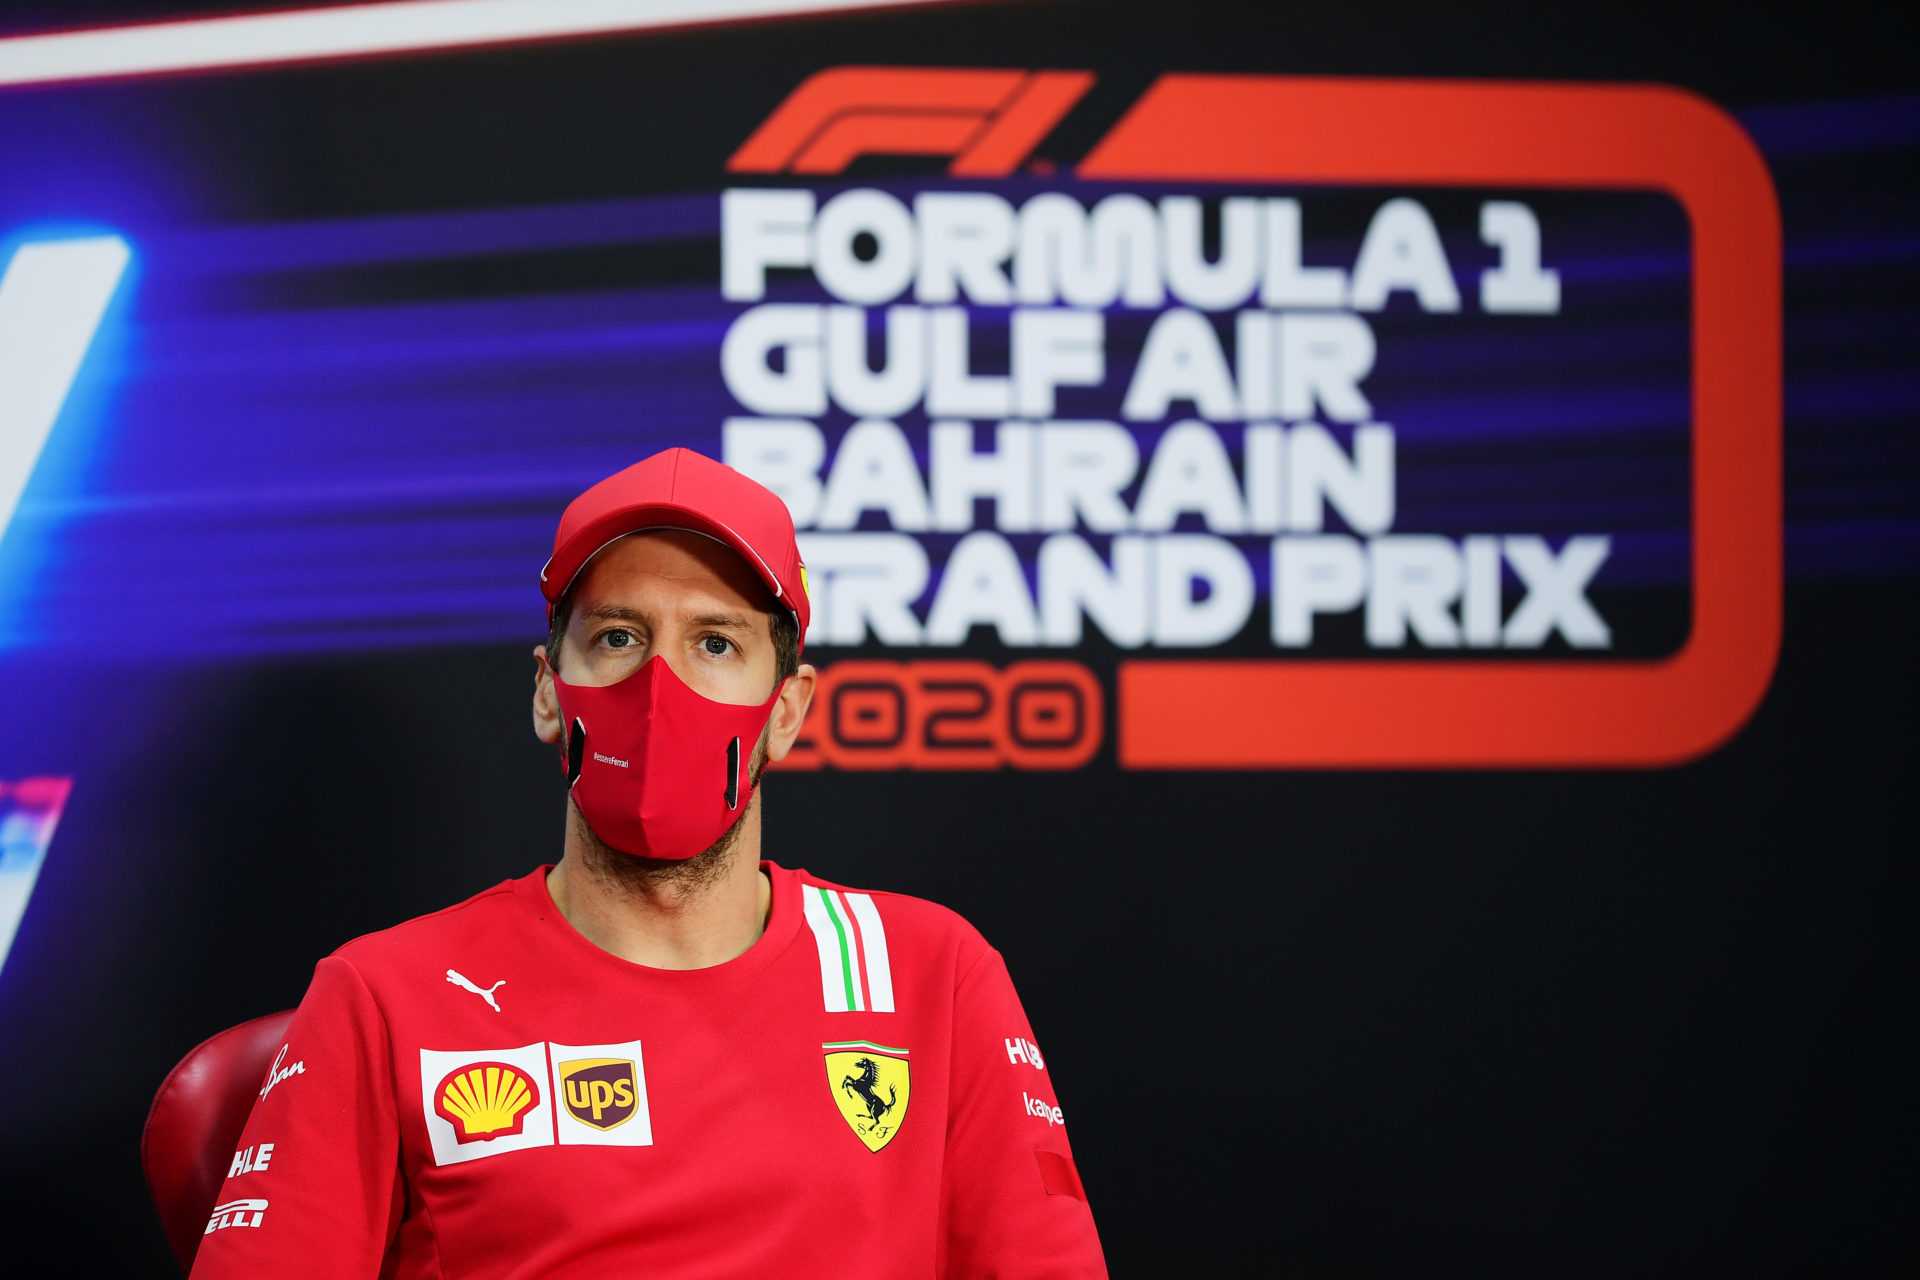 Sebastian Vettel expose un échec majeur lors du crash du GP Fiery Bahrain de Grosjean